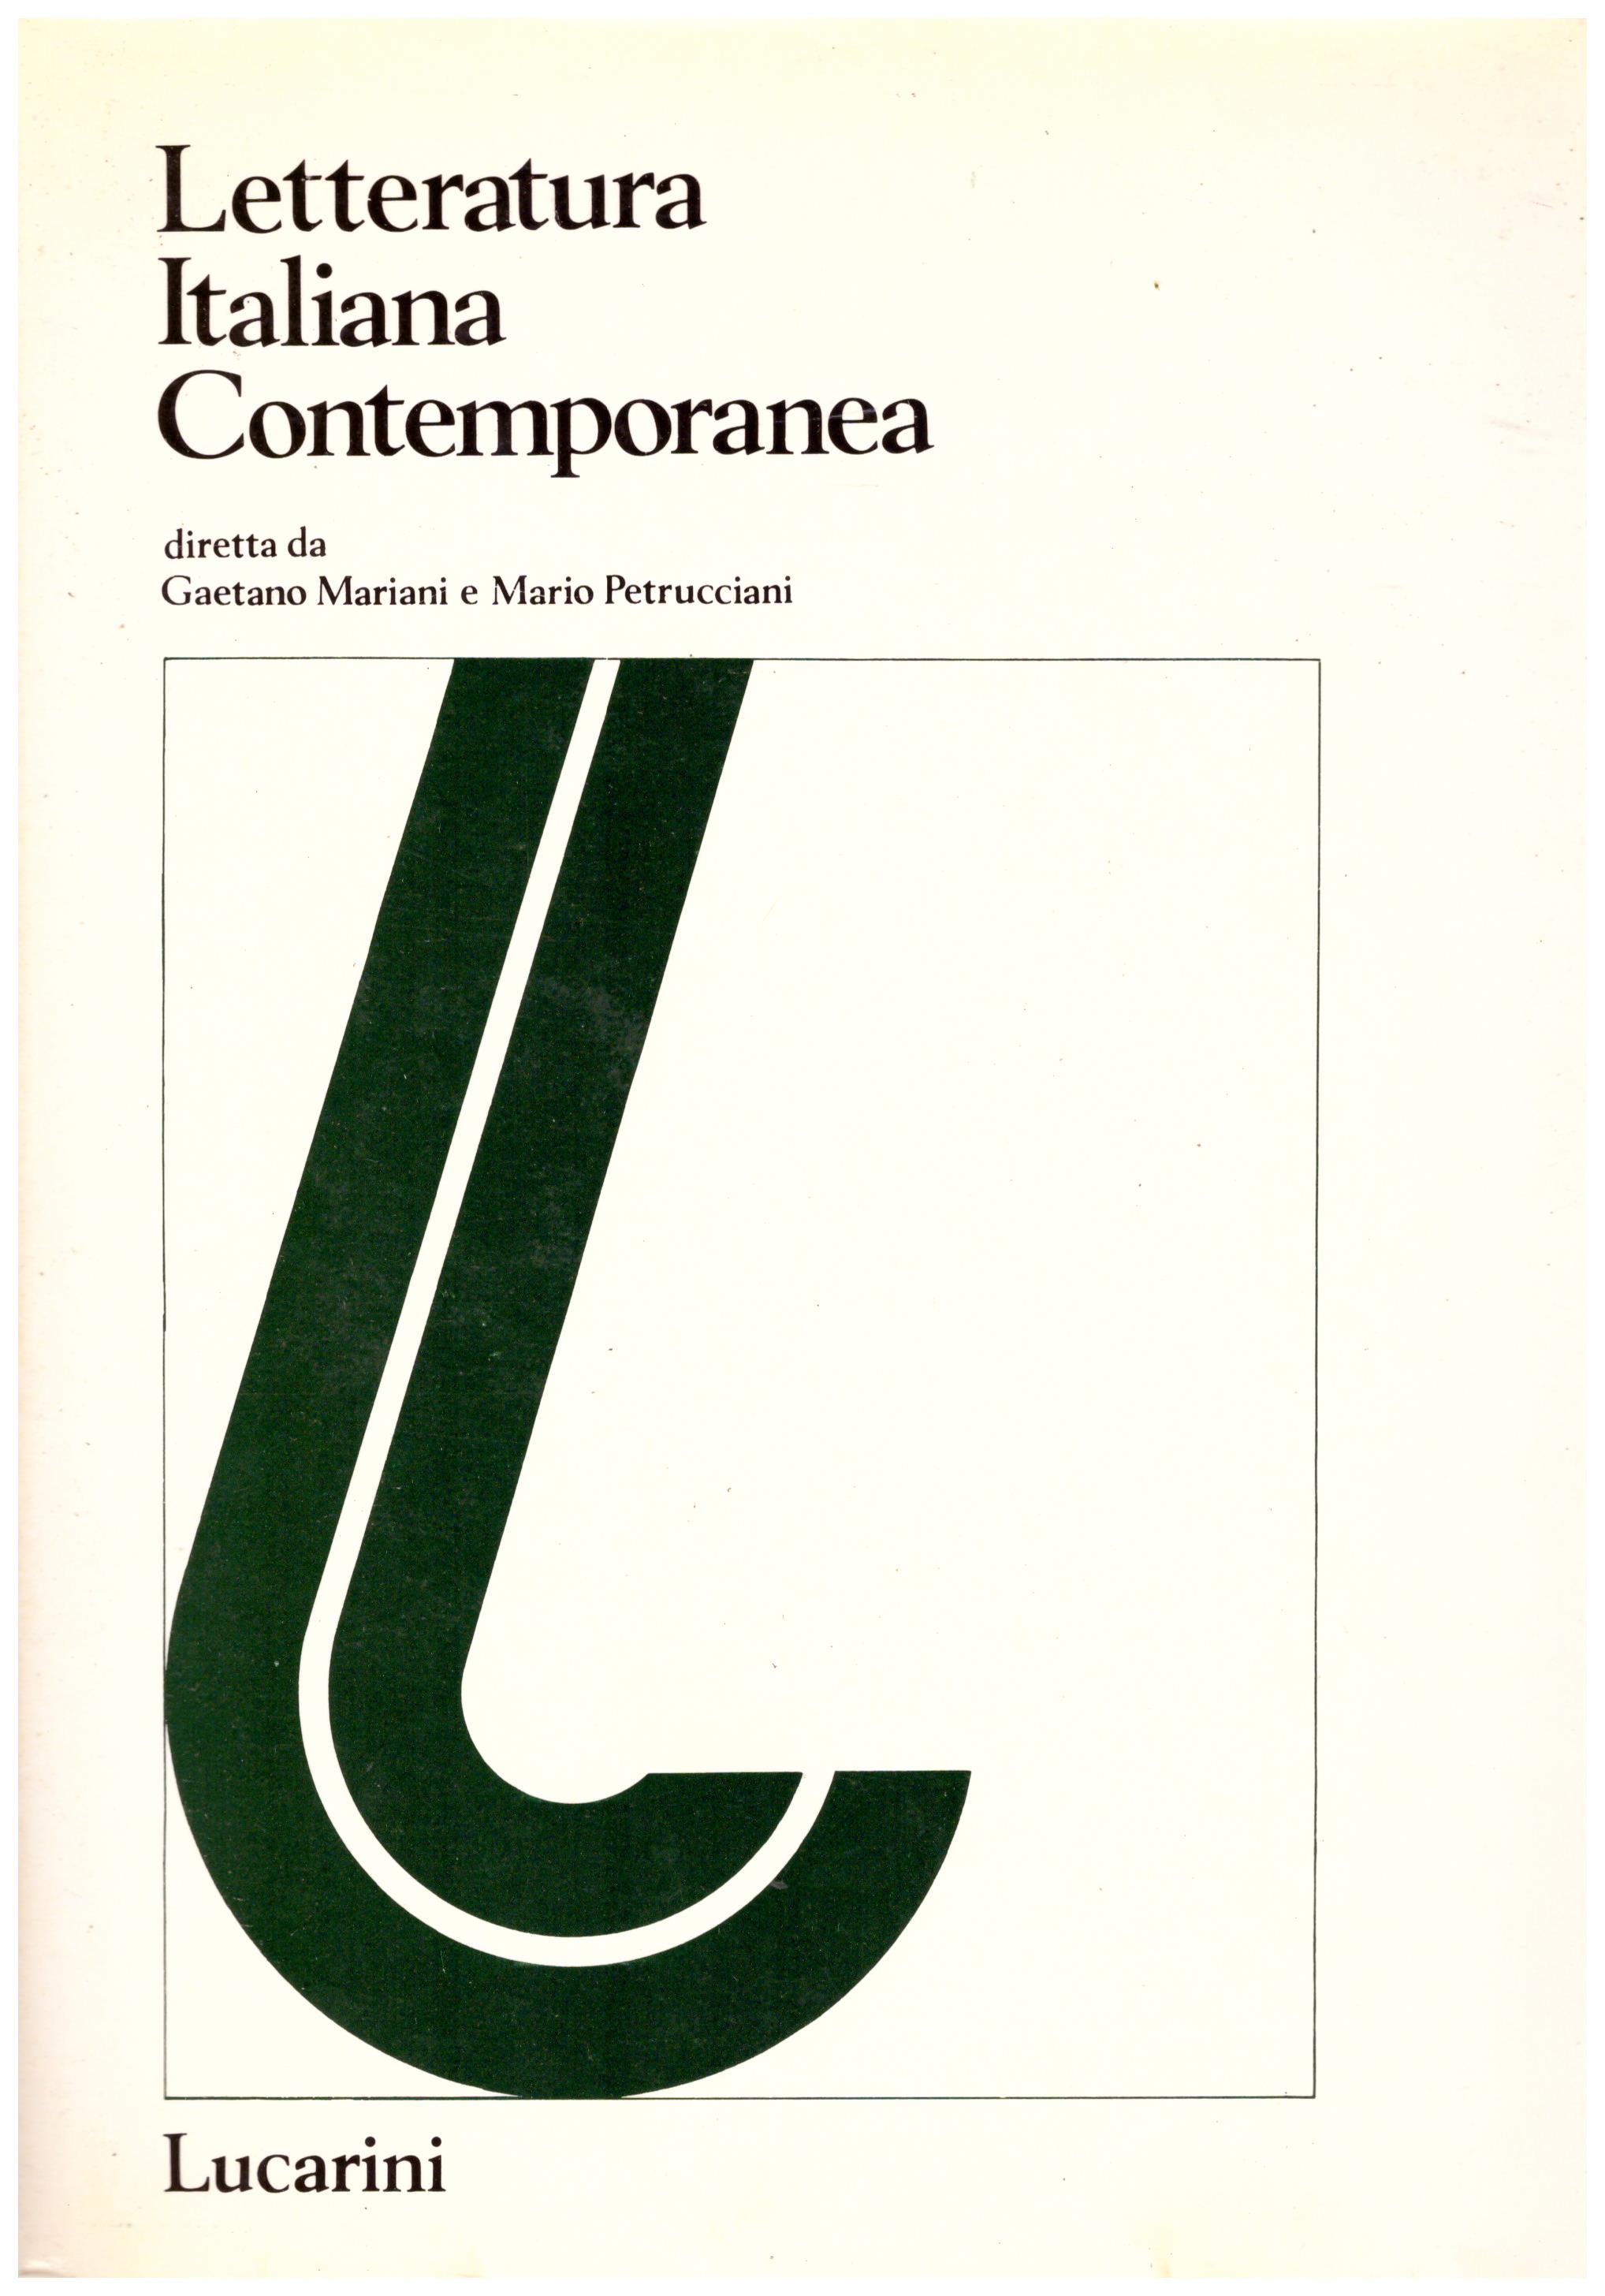 Titolo: Letteratura italiana contemporanea 4 parte 1  Autore: AA.VV.  Editore: Lucarini